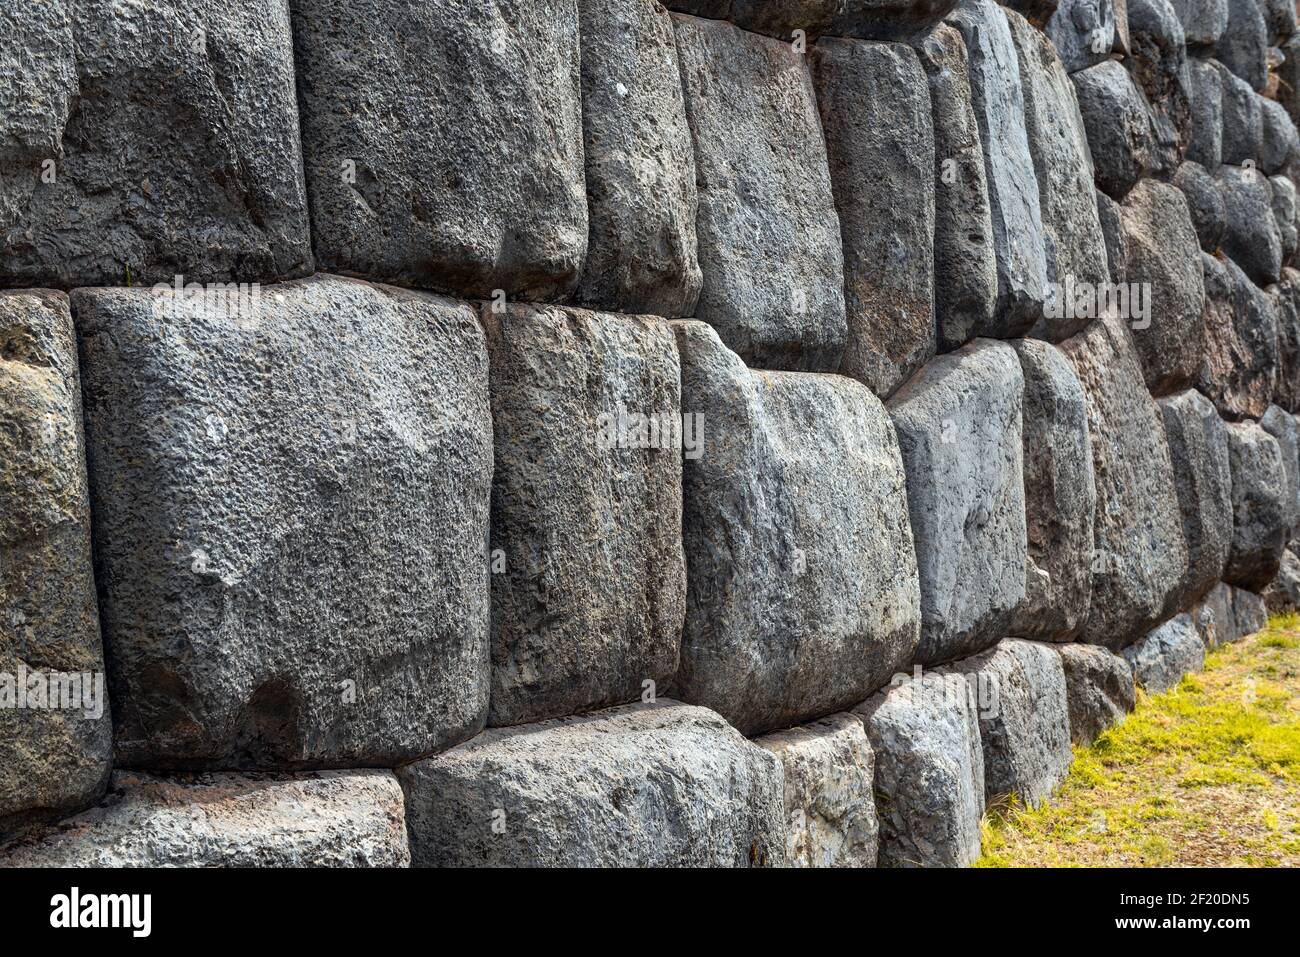 Gros plan de blocs de granit géants de la maçonnerie murale Inca, Saqsayhuaman, Cusco, Pérou. Banque D'Images